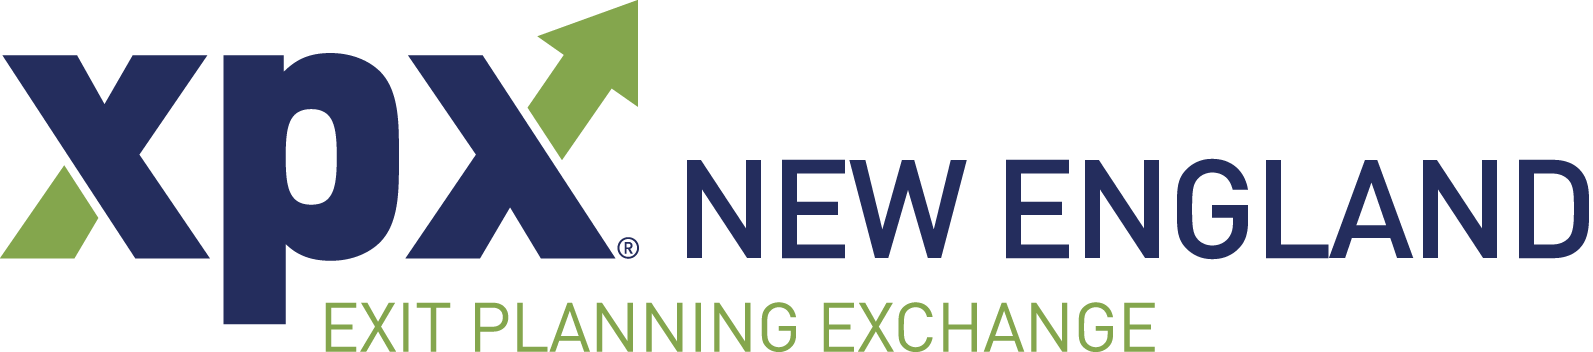 Exit Planning Exchange